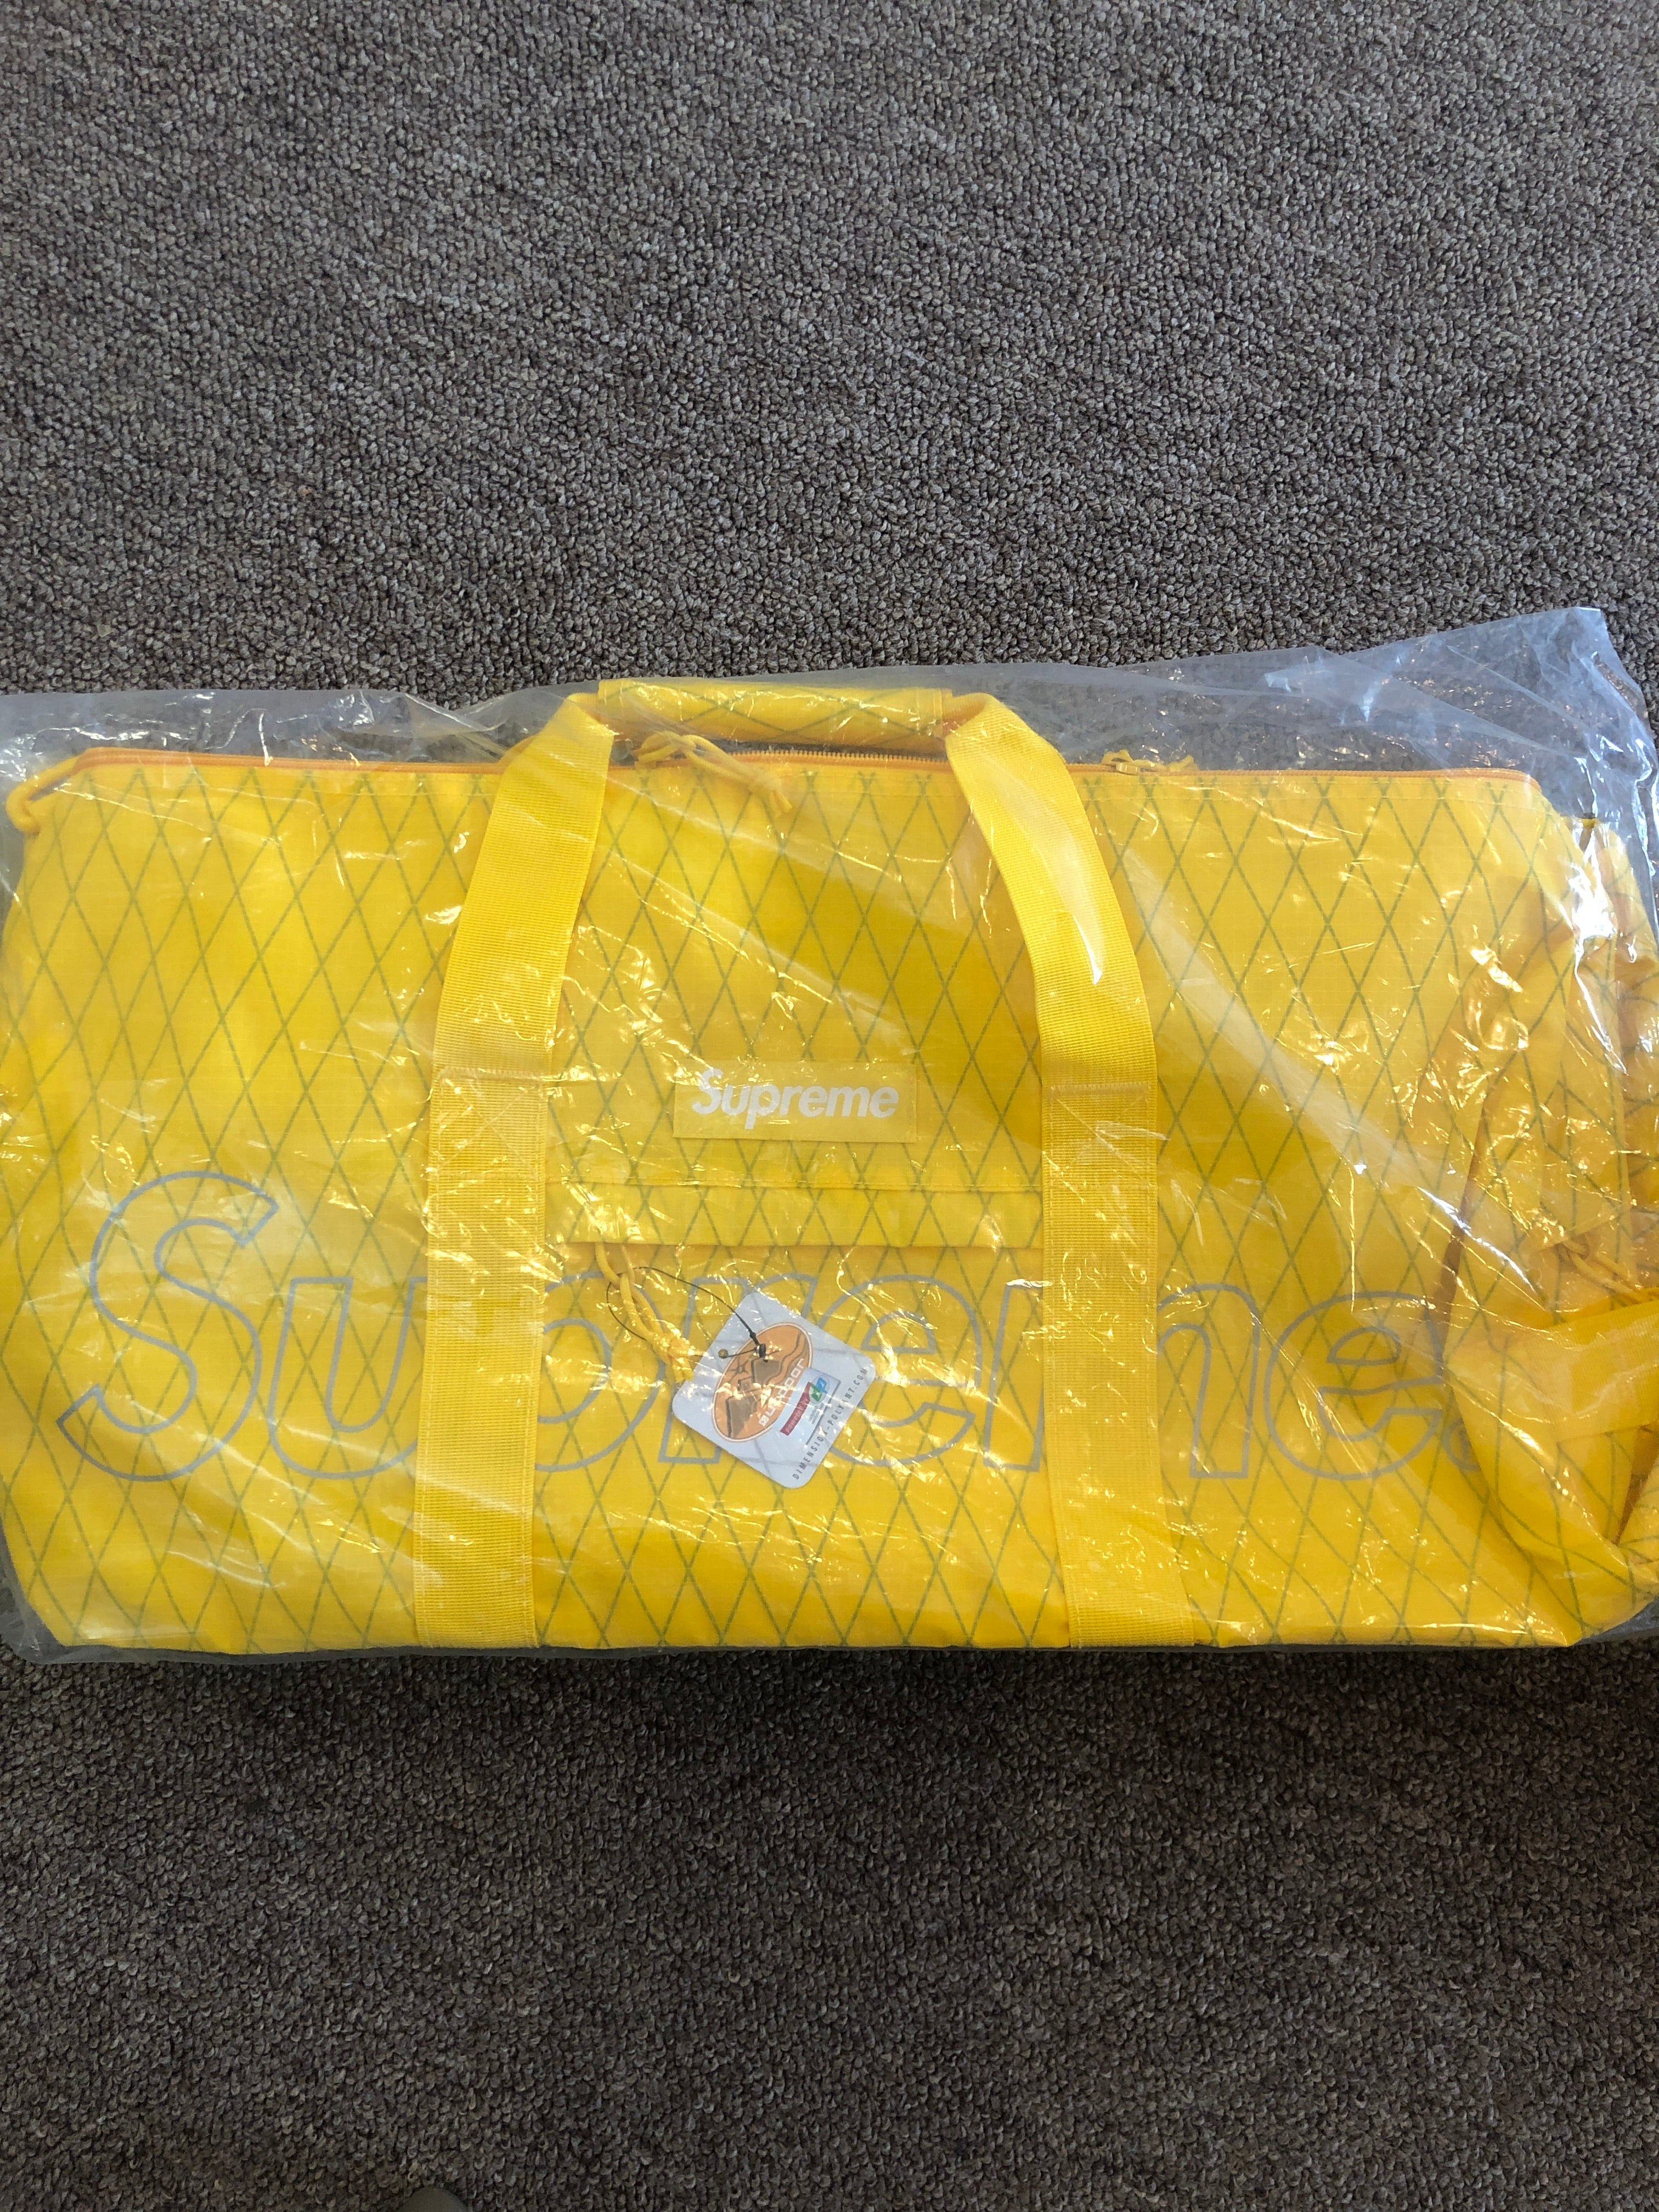 supreme yellow duffle bag